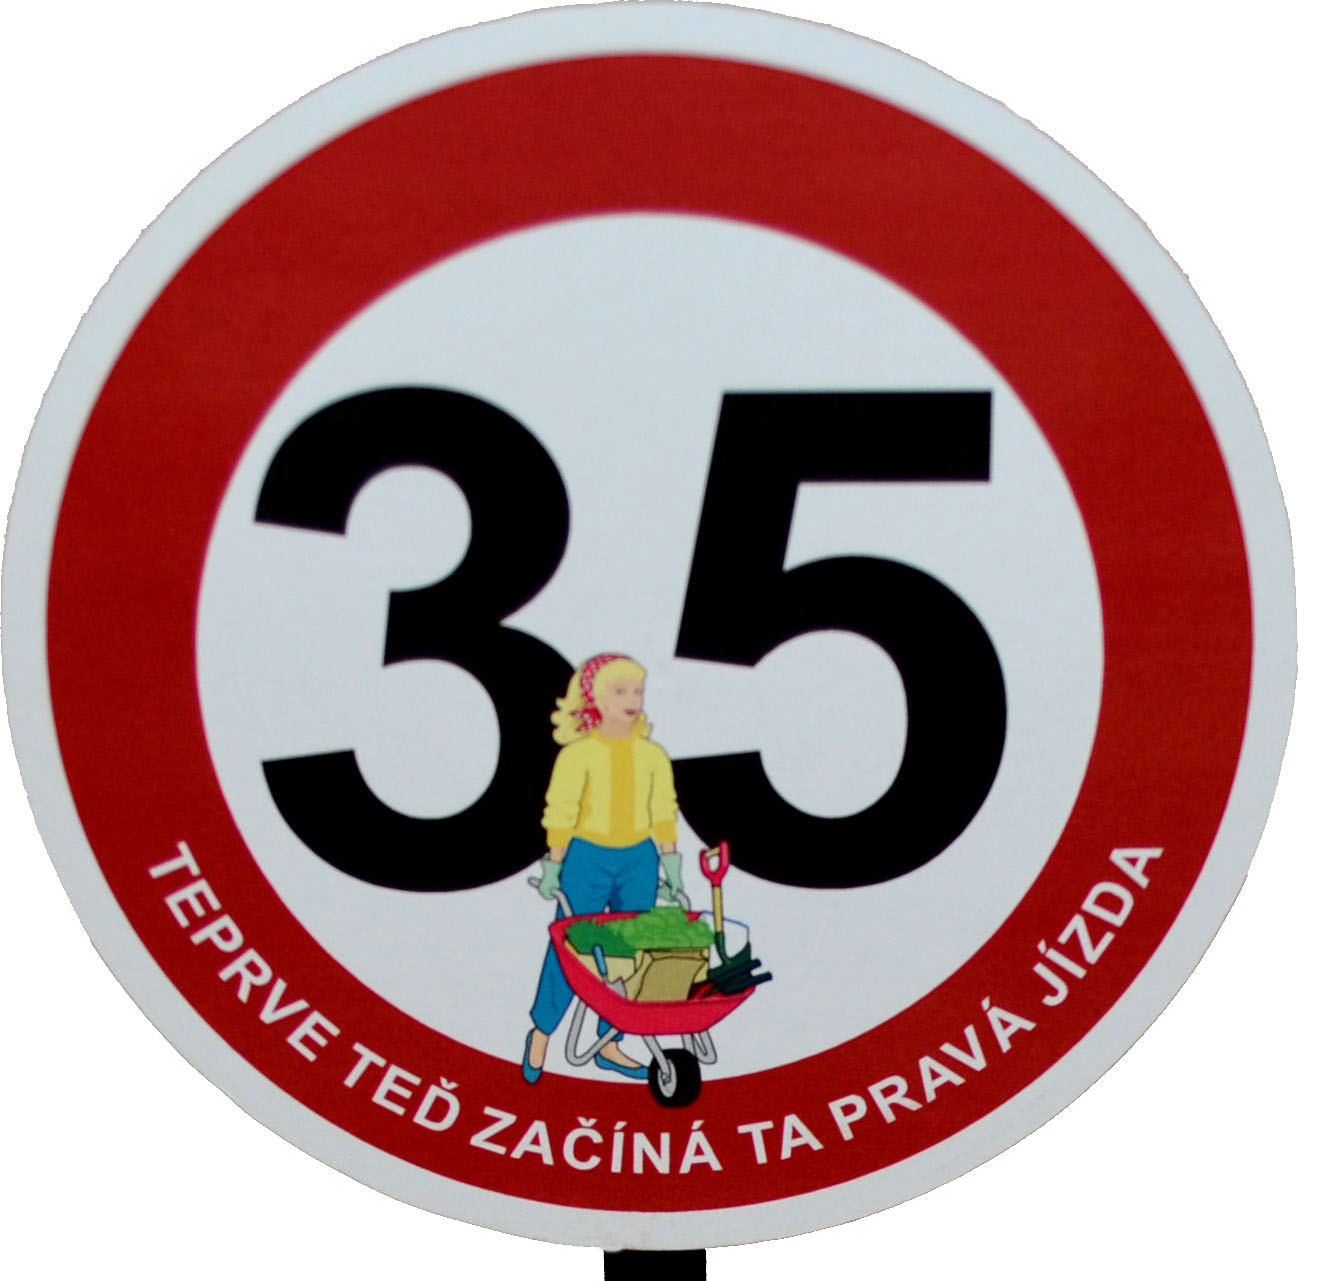 Dopravní značka k 35. narozeninám pro ženu